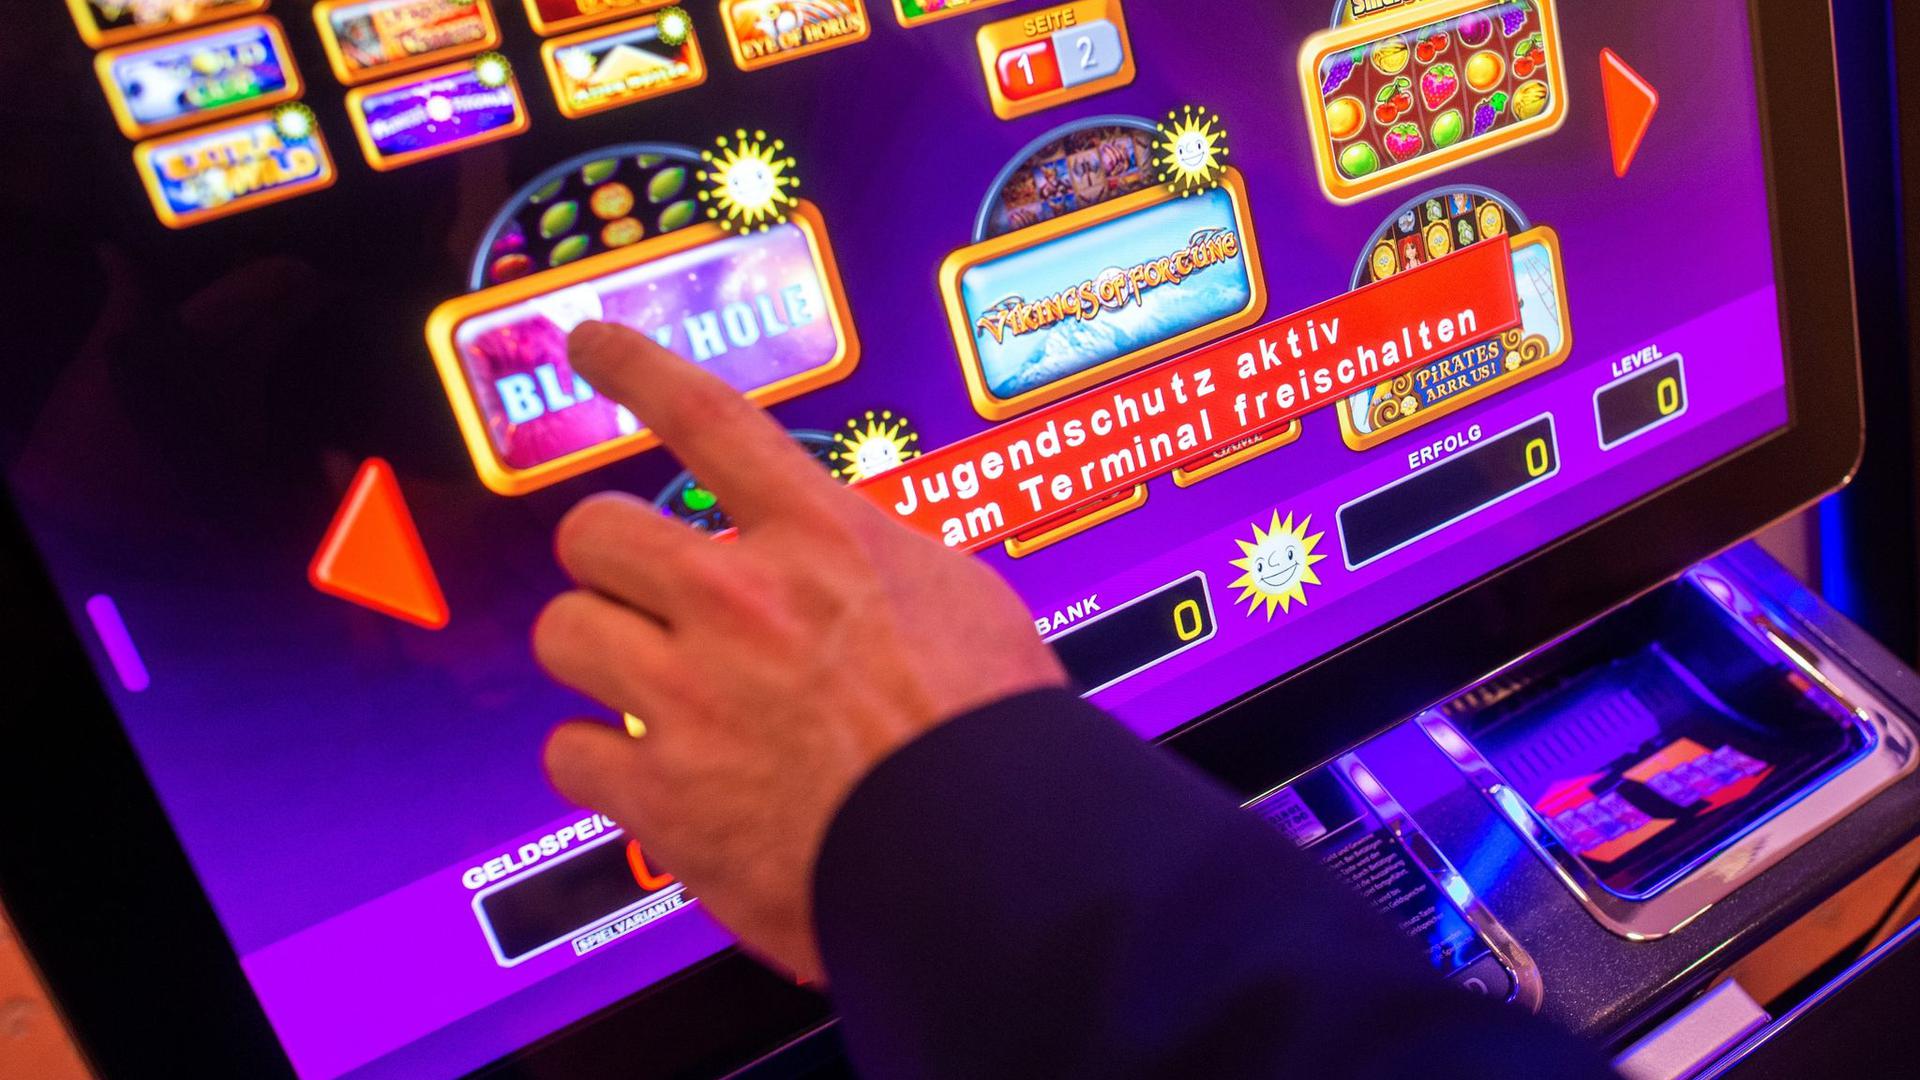 Nach einer Studie ist bei 2,3 Prozent der Menschen im Alter zwischen 18 und 70 eine „Störung durch Glücksspiele“ erkennbar.